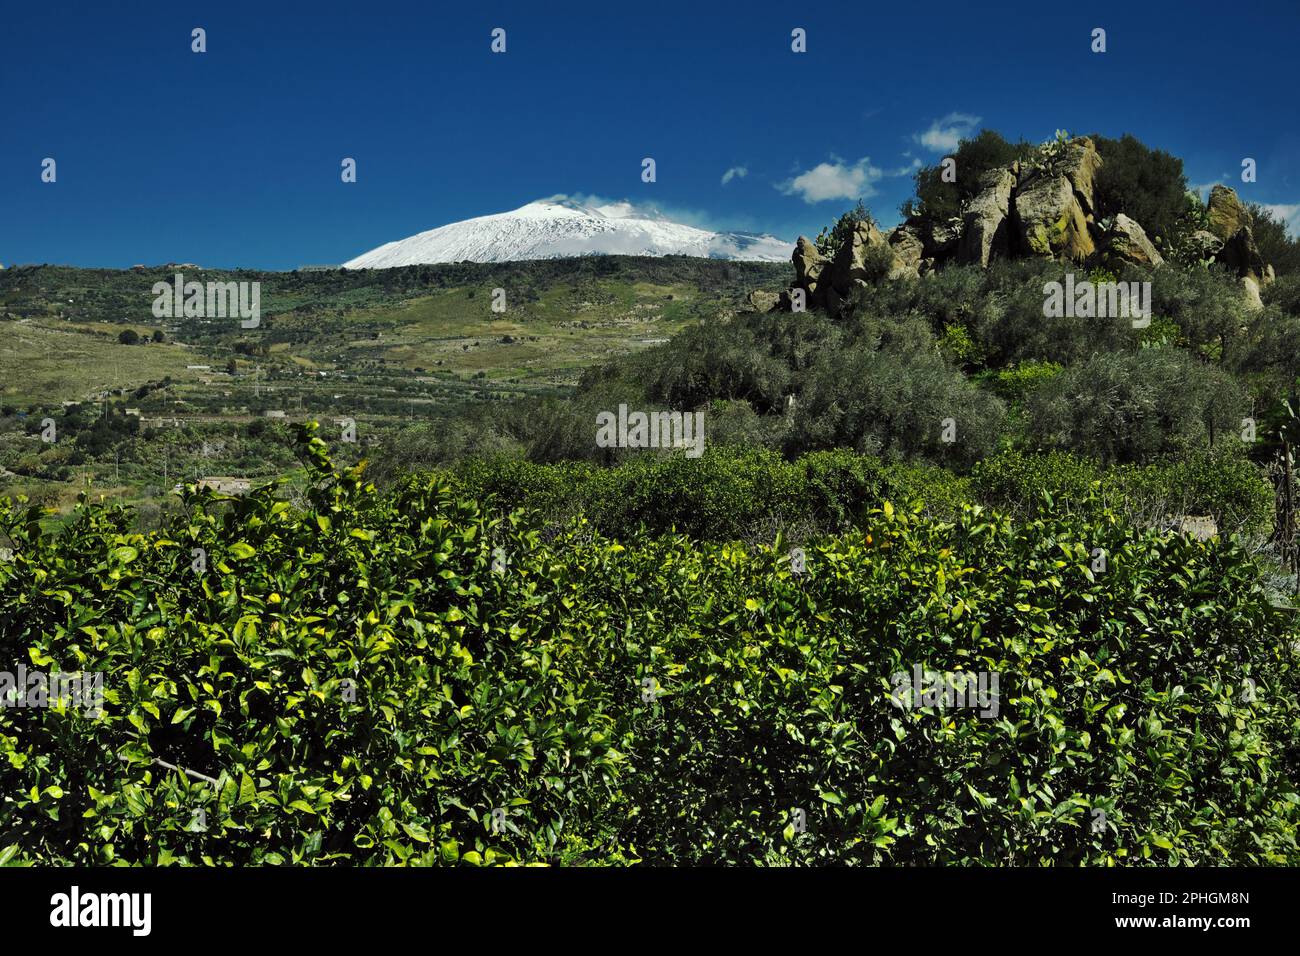 Primavera in Sicilia paesaggio con Etna coperto di neve bianca contro il cielo blu, Italia Foto Stock